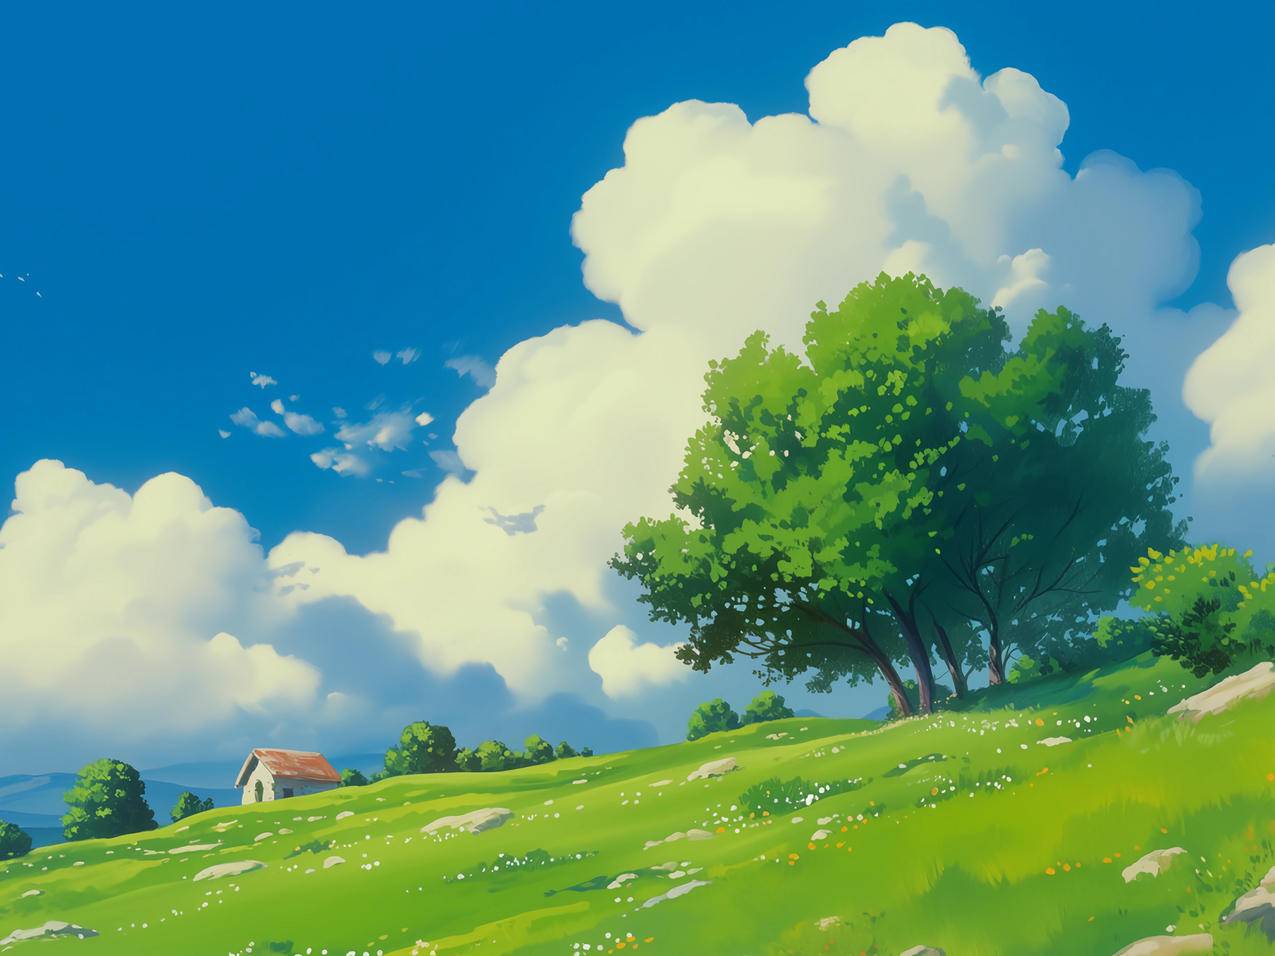 蓝天白云 树 房子 绿色草地 鲜花 平板风景壁纸